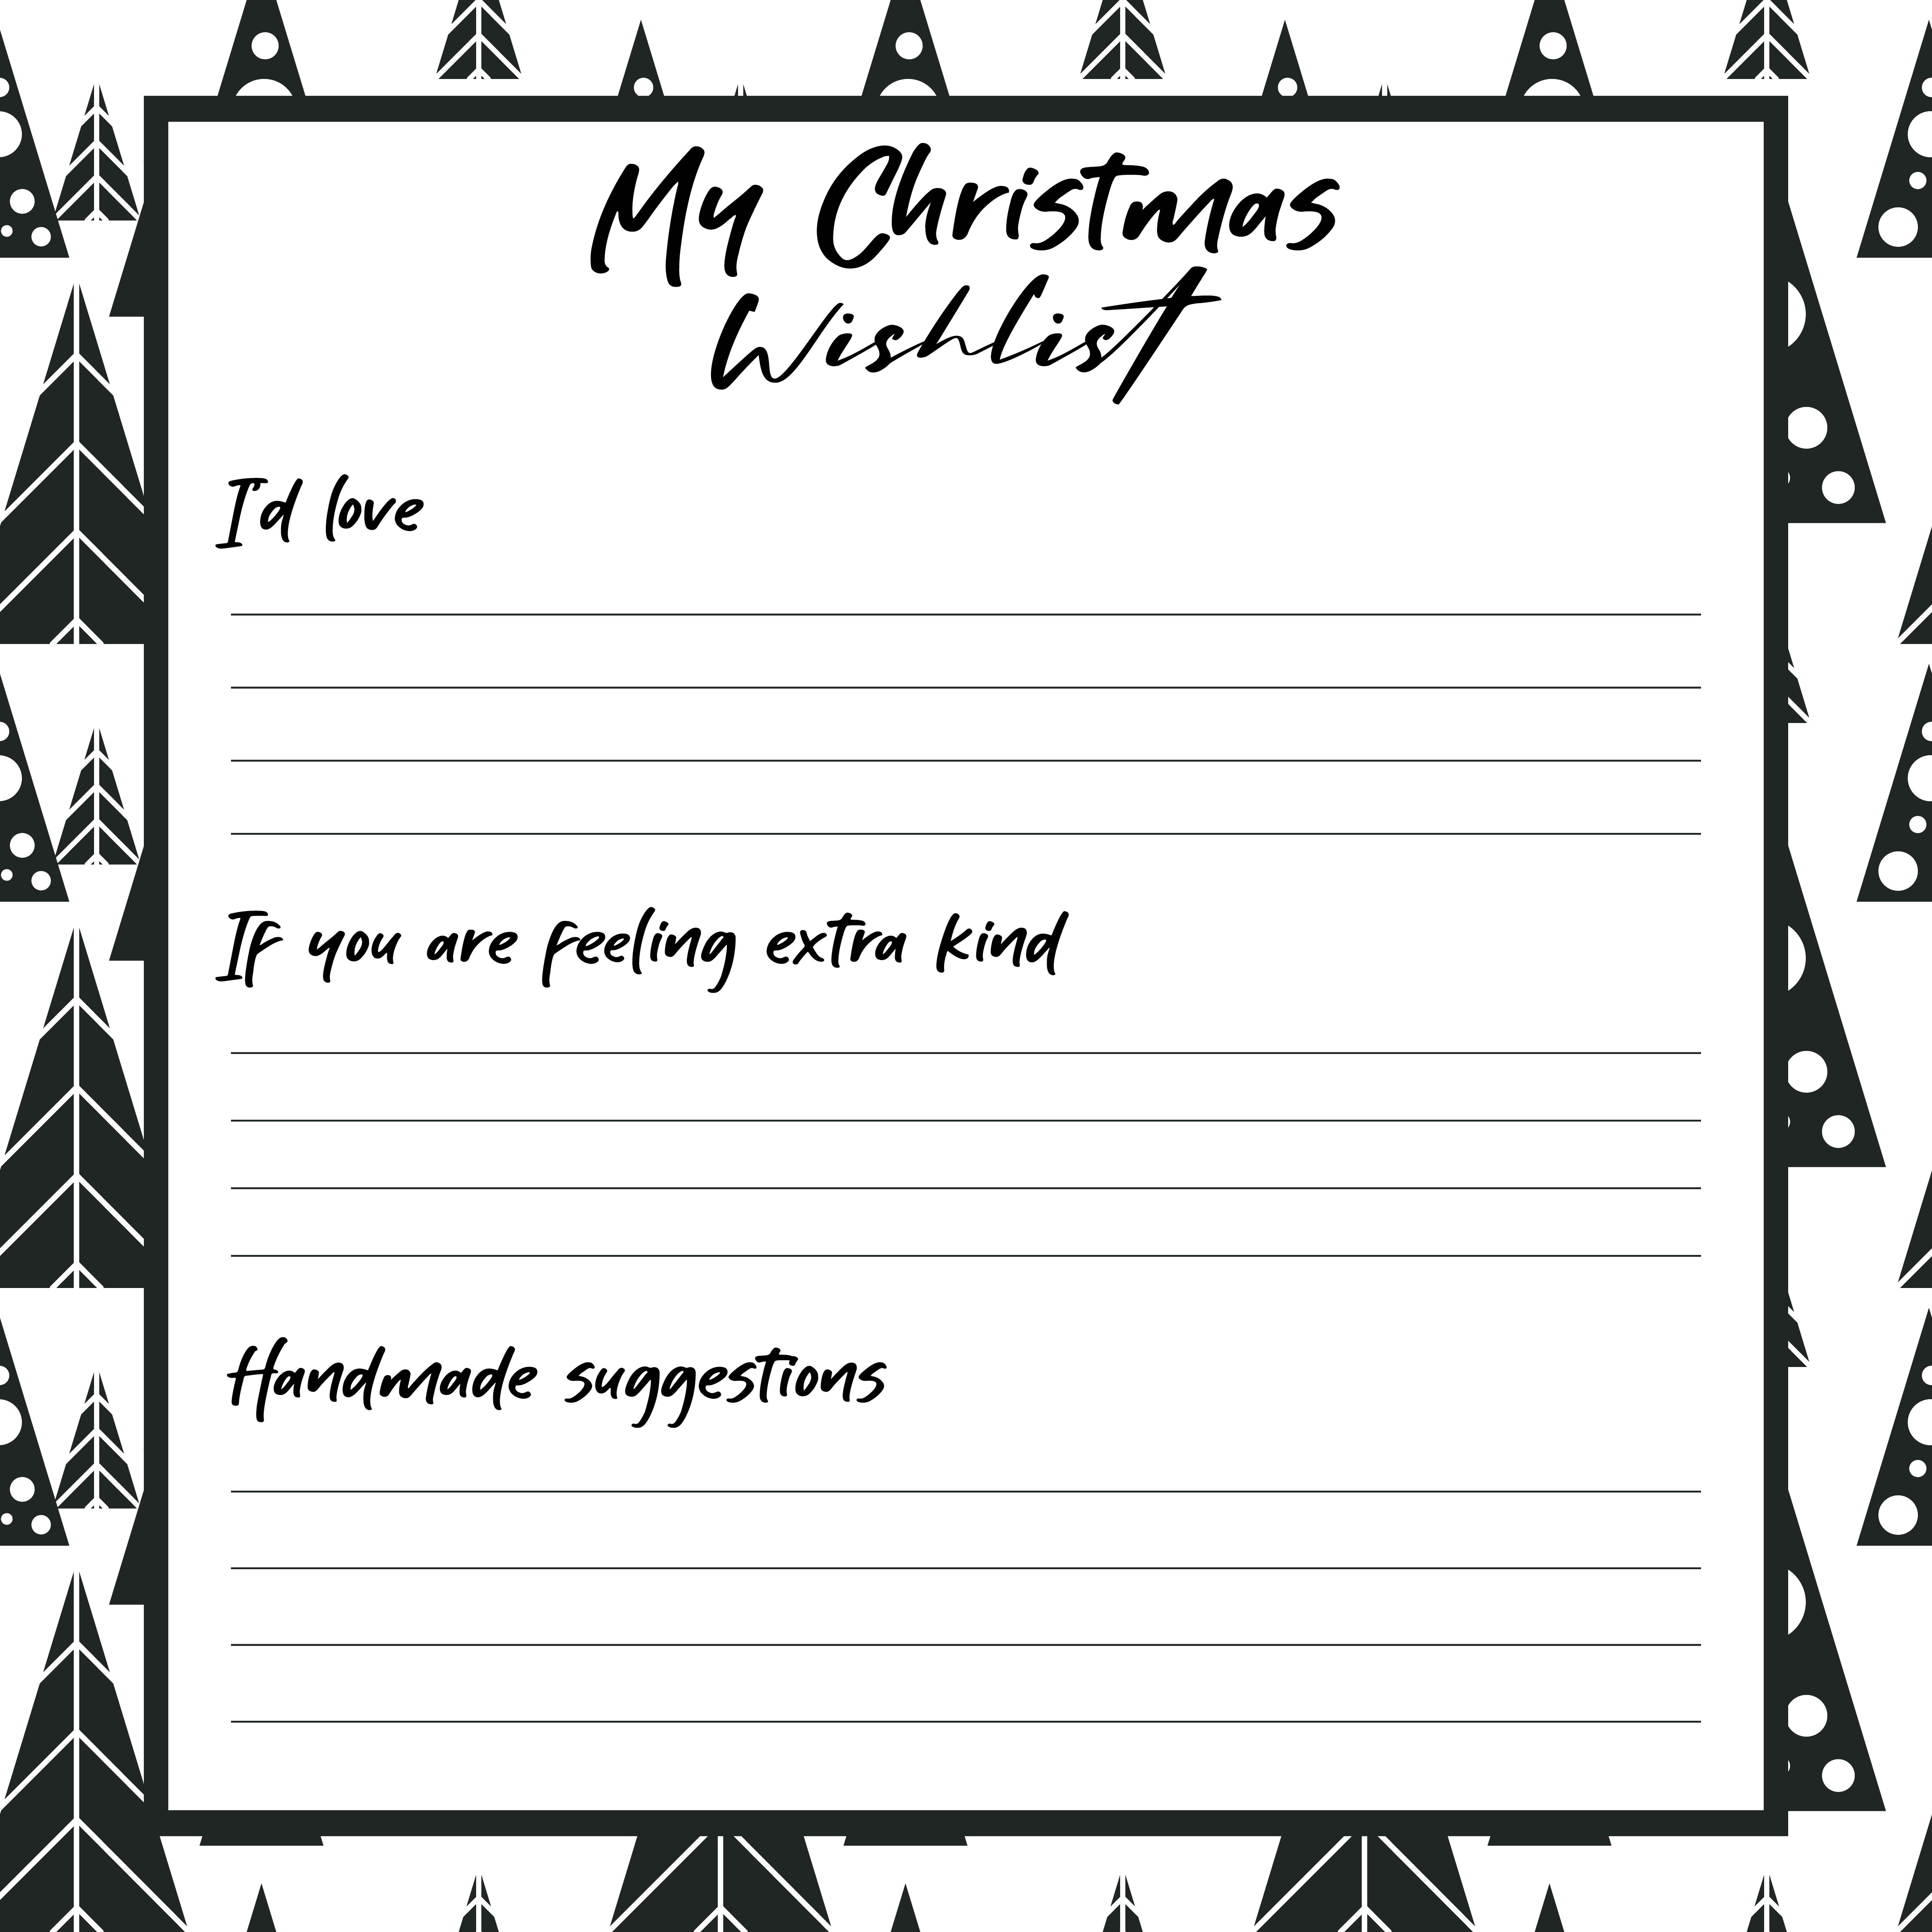 Printable Christmas Gift Wish List